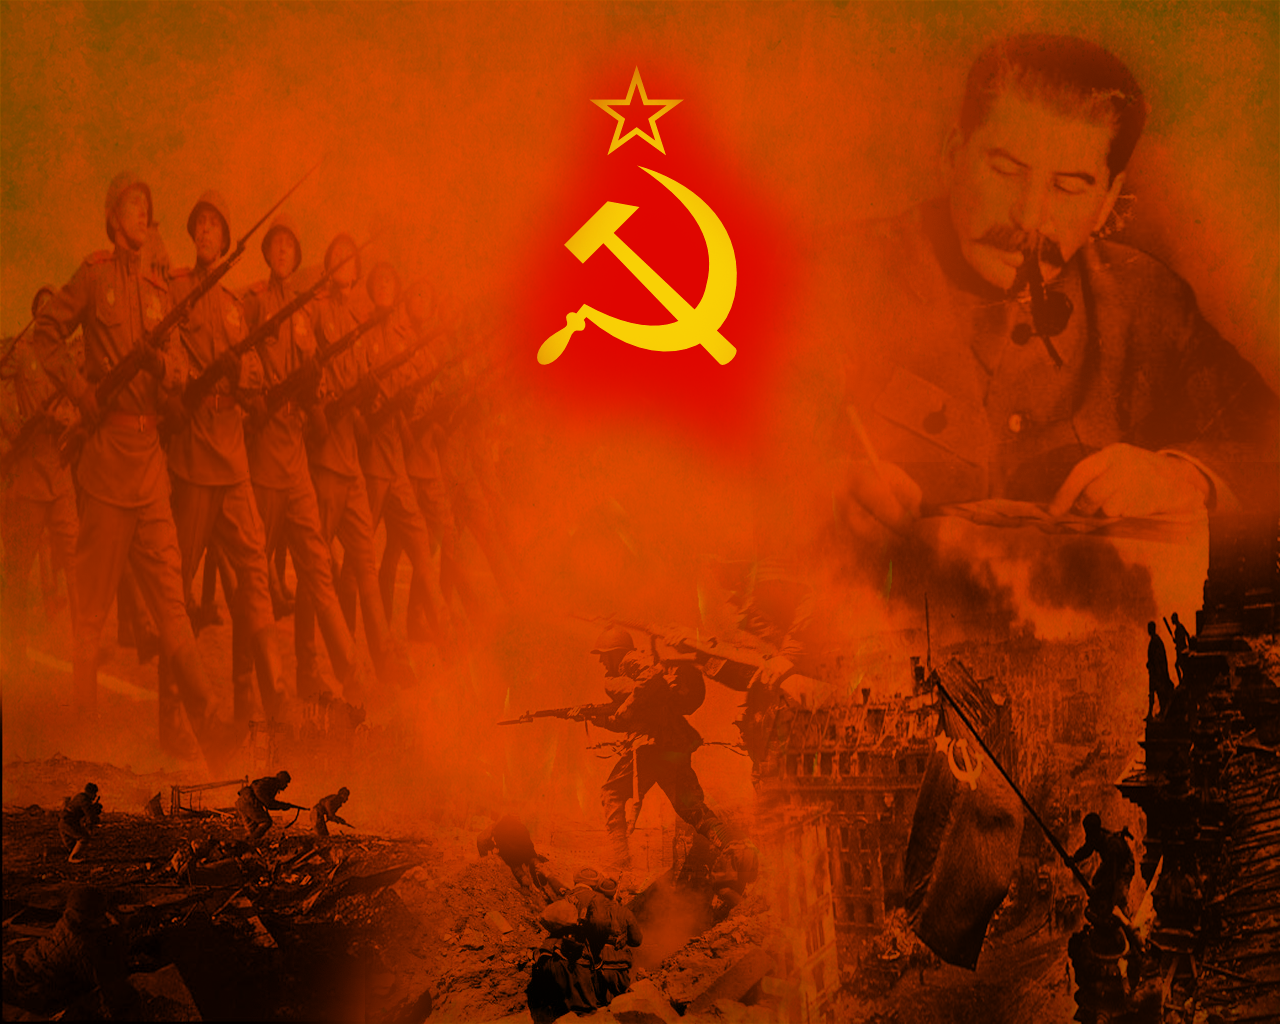 WWII USSR by EduardoGaray on